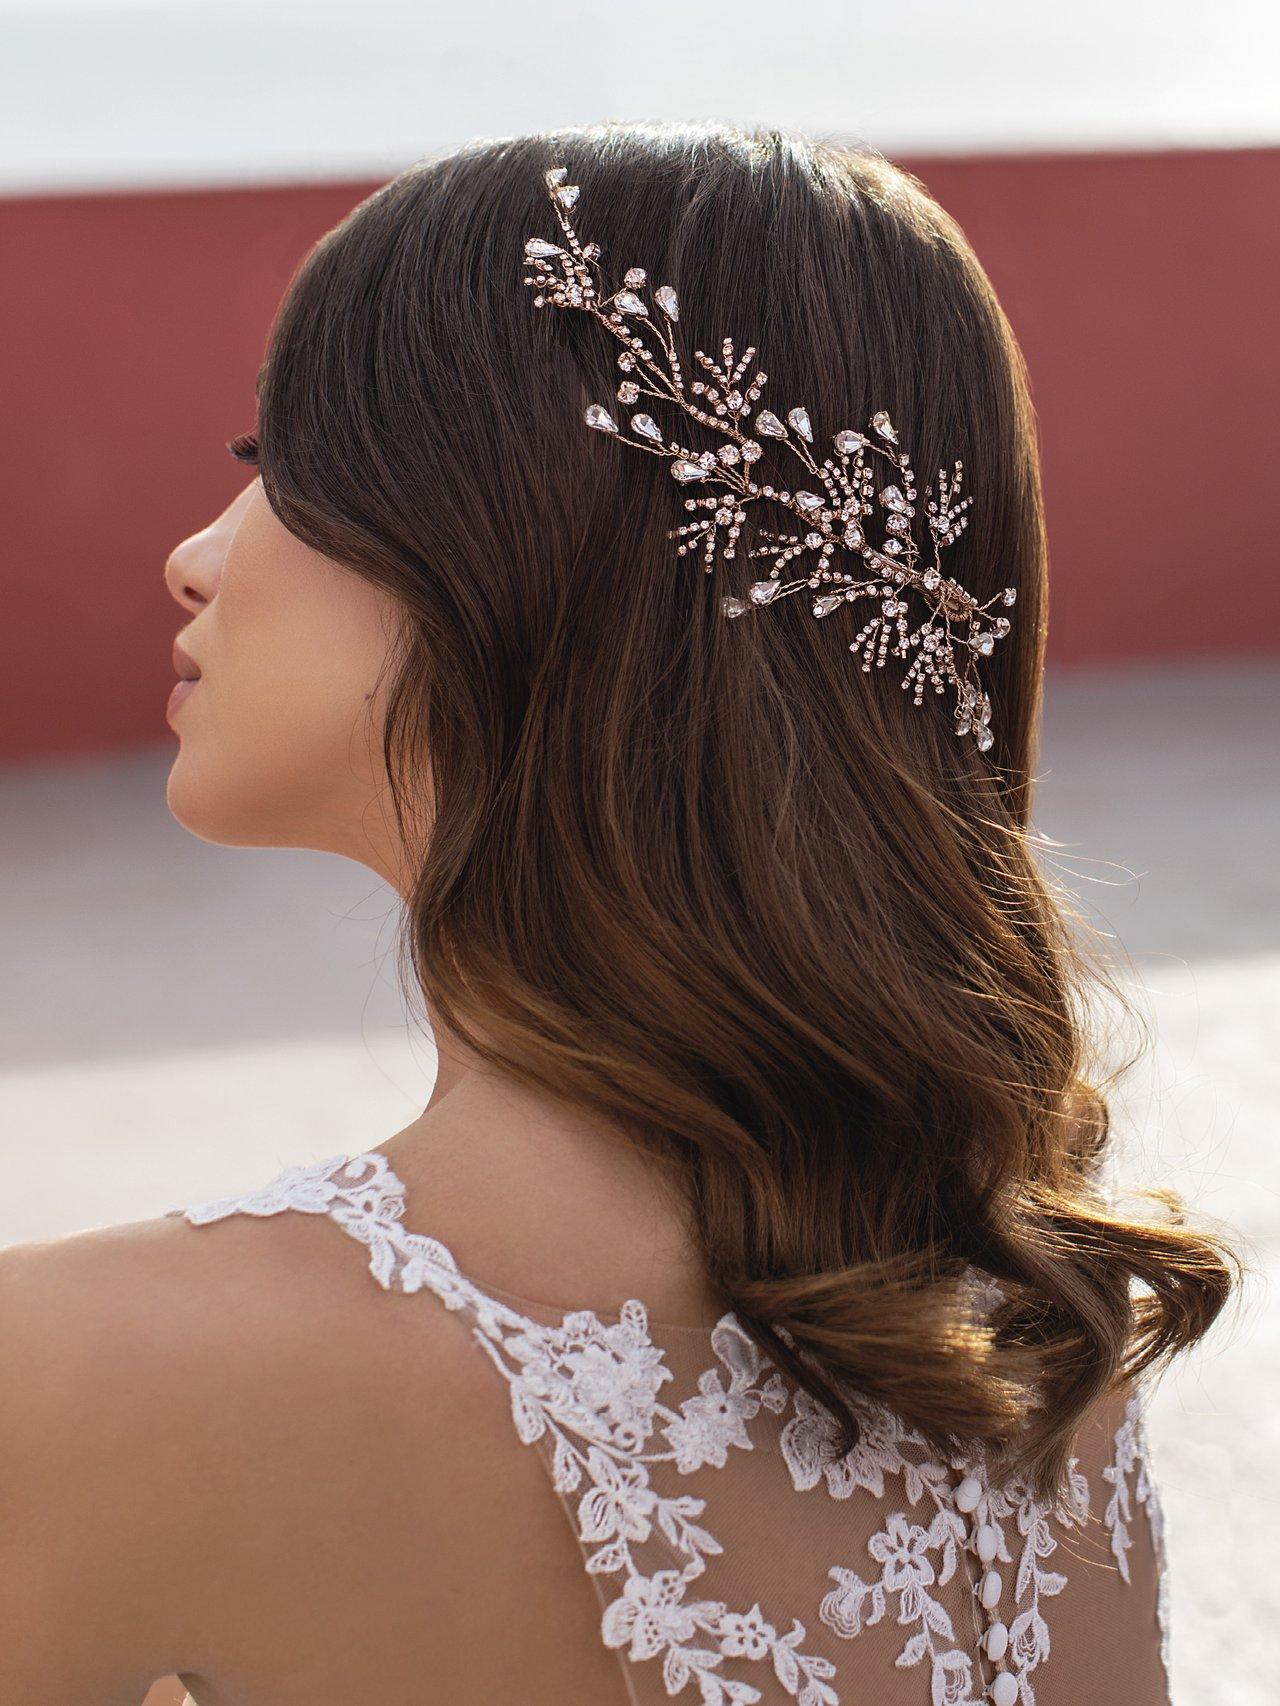 Pigmento Galleta neutral 10 accesorios que querrás llevar con tu peinado de novia ¡te fascinarán!